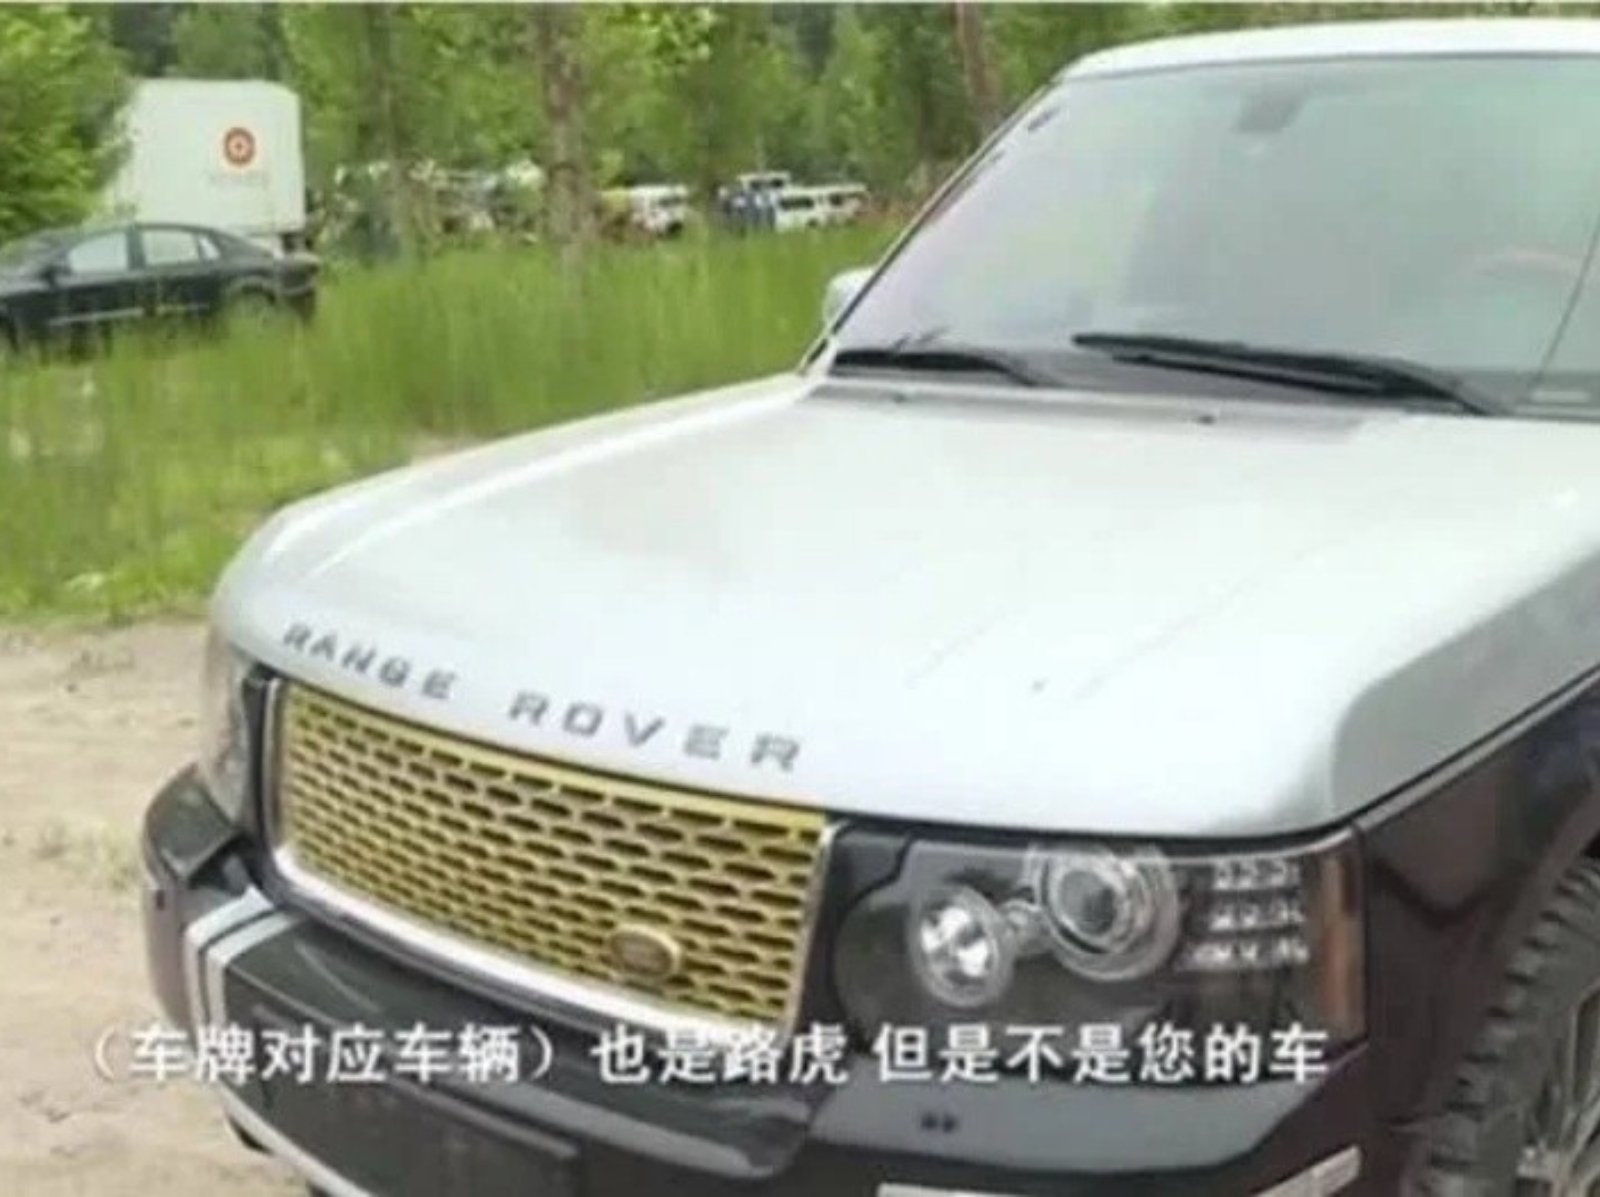 中國男子花 22 萬爽買 Land Rover，卻遭警察查出「整輛都是假的」！